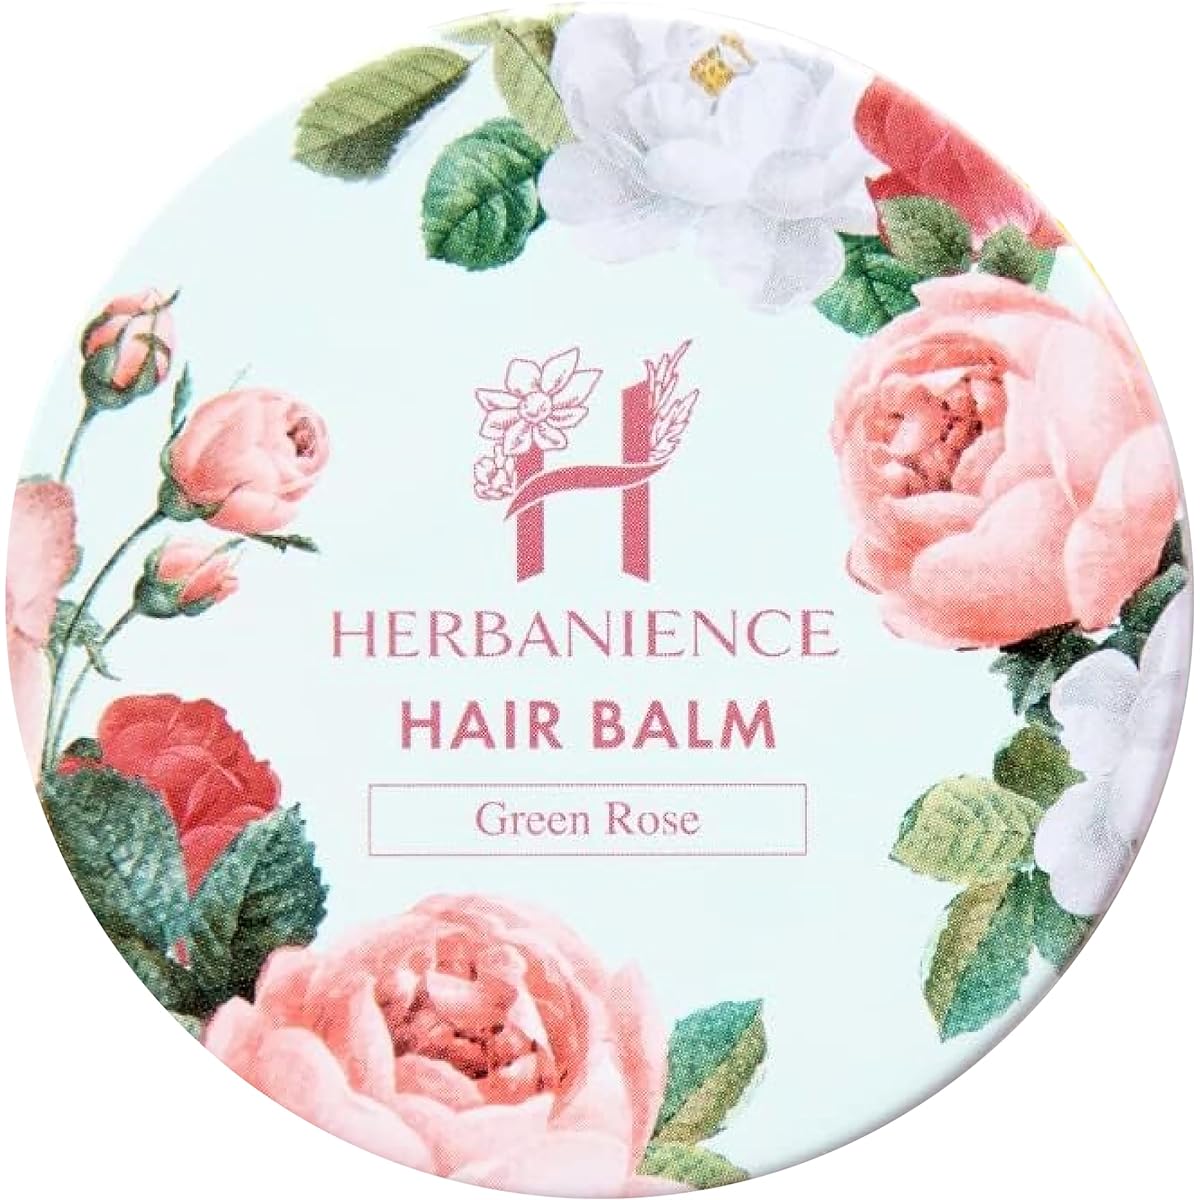 Sakura no Mori Herbanience Hair Balm 35g Organic Ingredients Naturally Derived Ingredients Green Rose